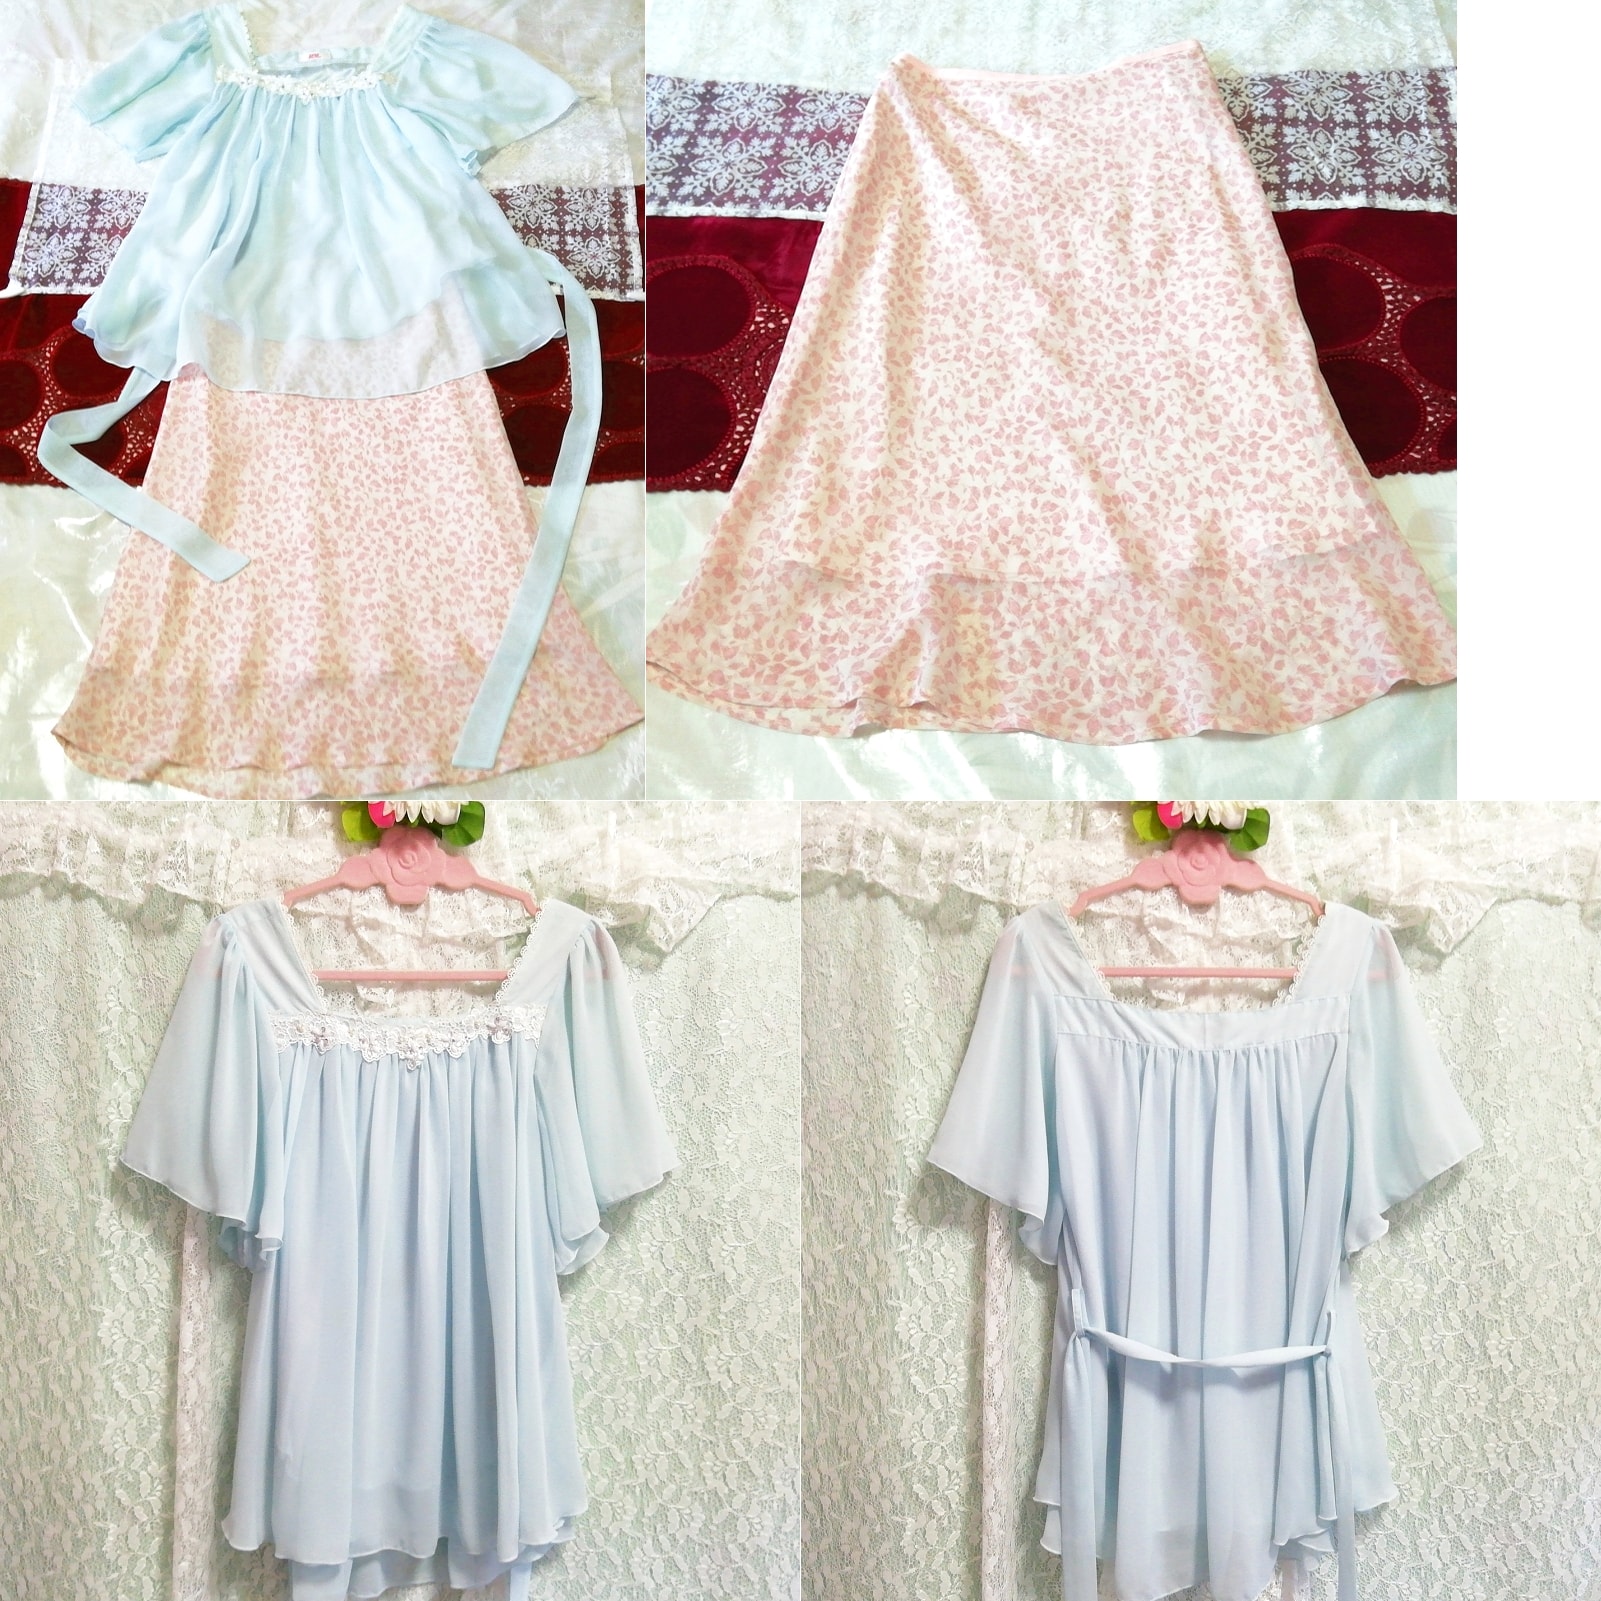 浅蓝色雪纺长袍睡衣粉色花卉图案裙子 2 件, 时尚, 女士时装, 睡衣